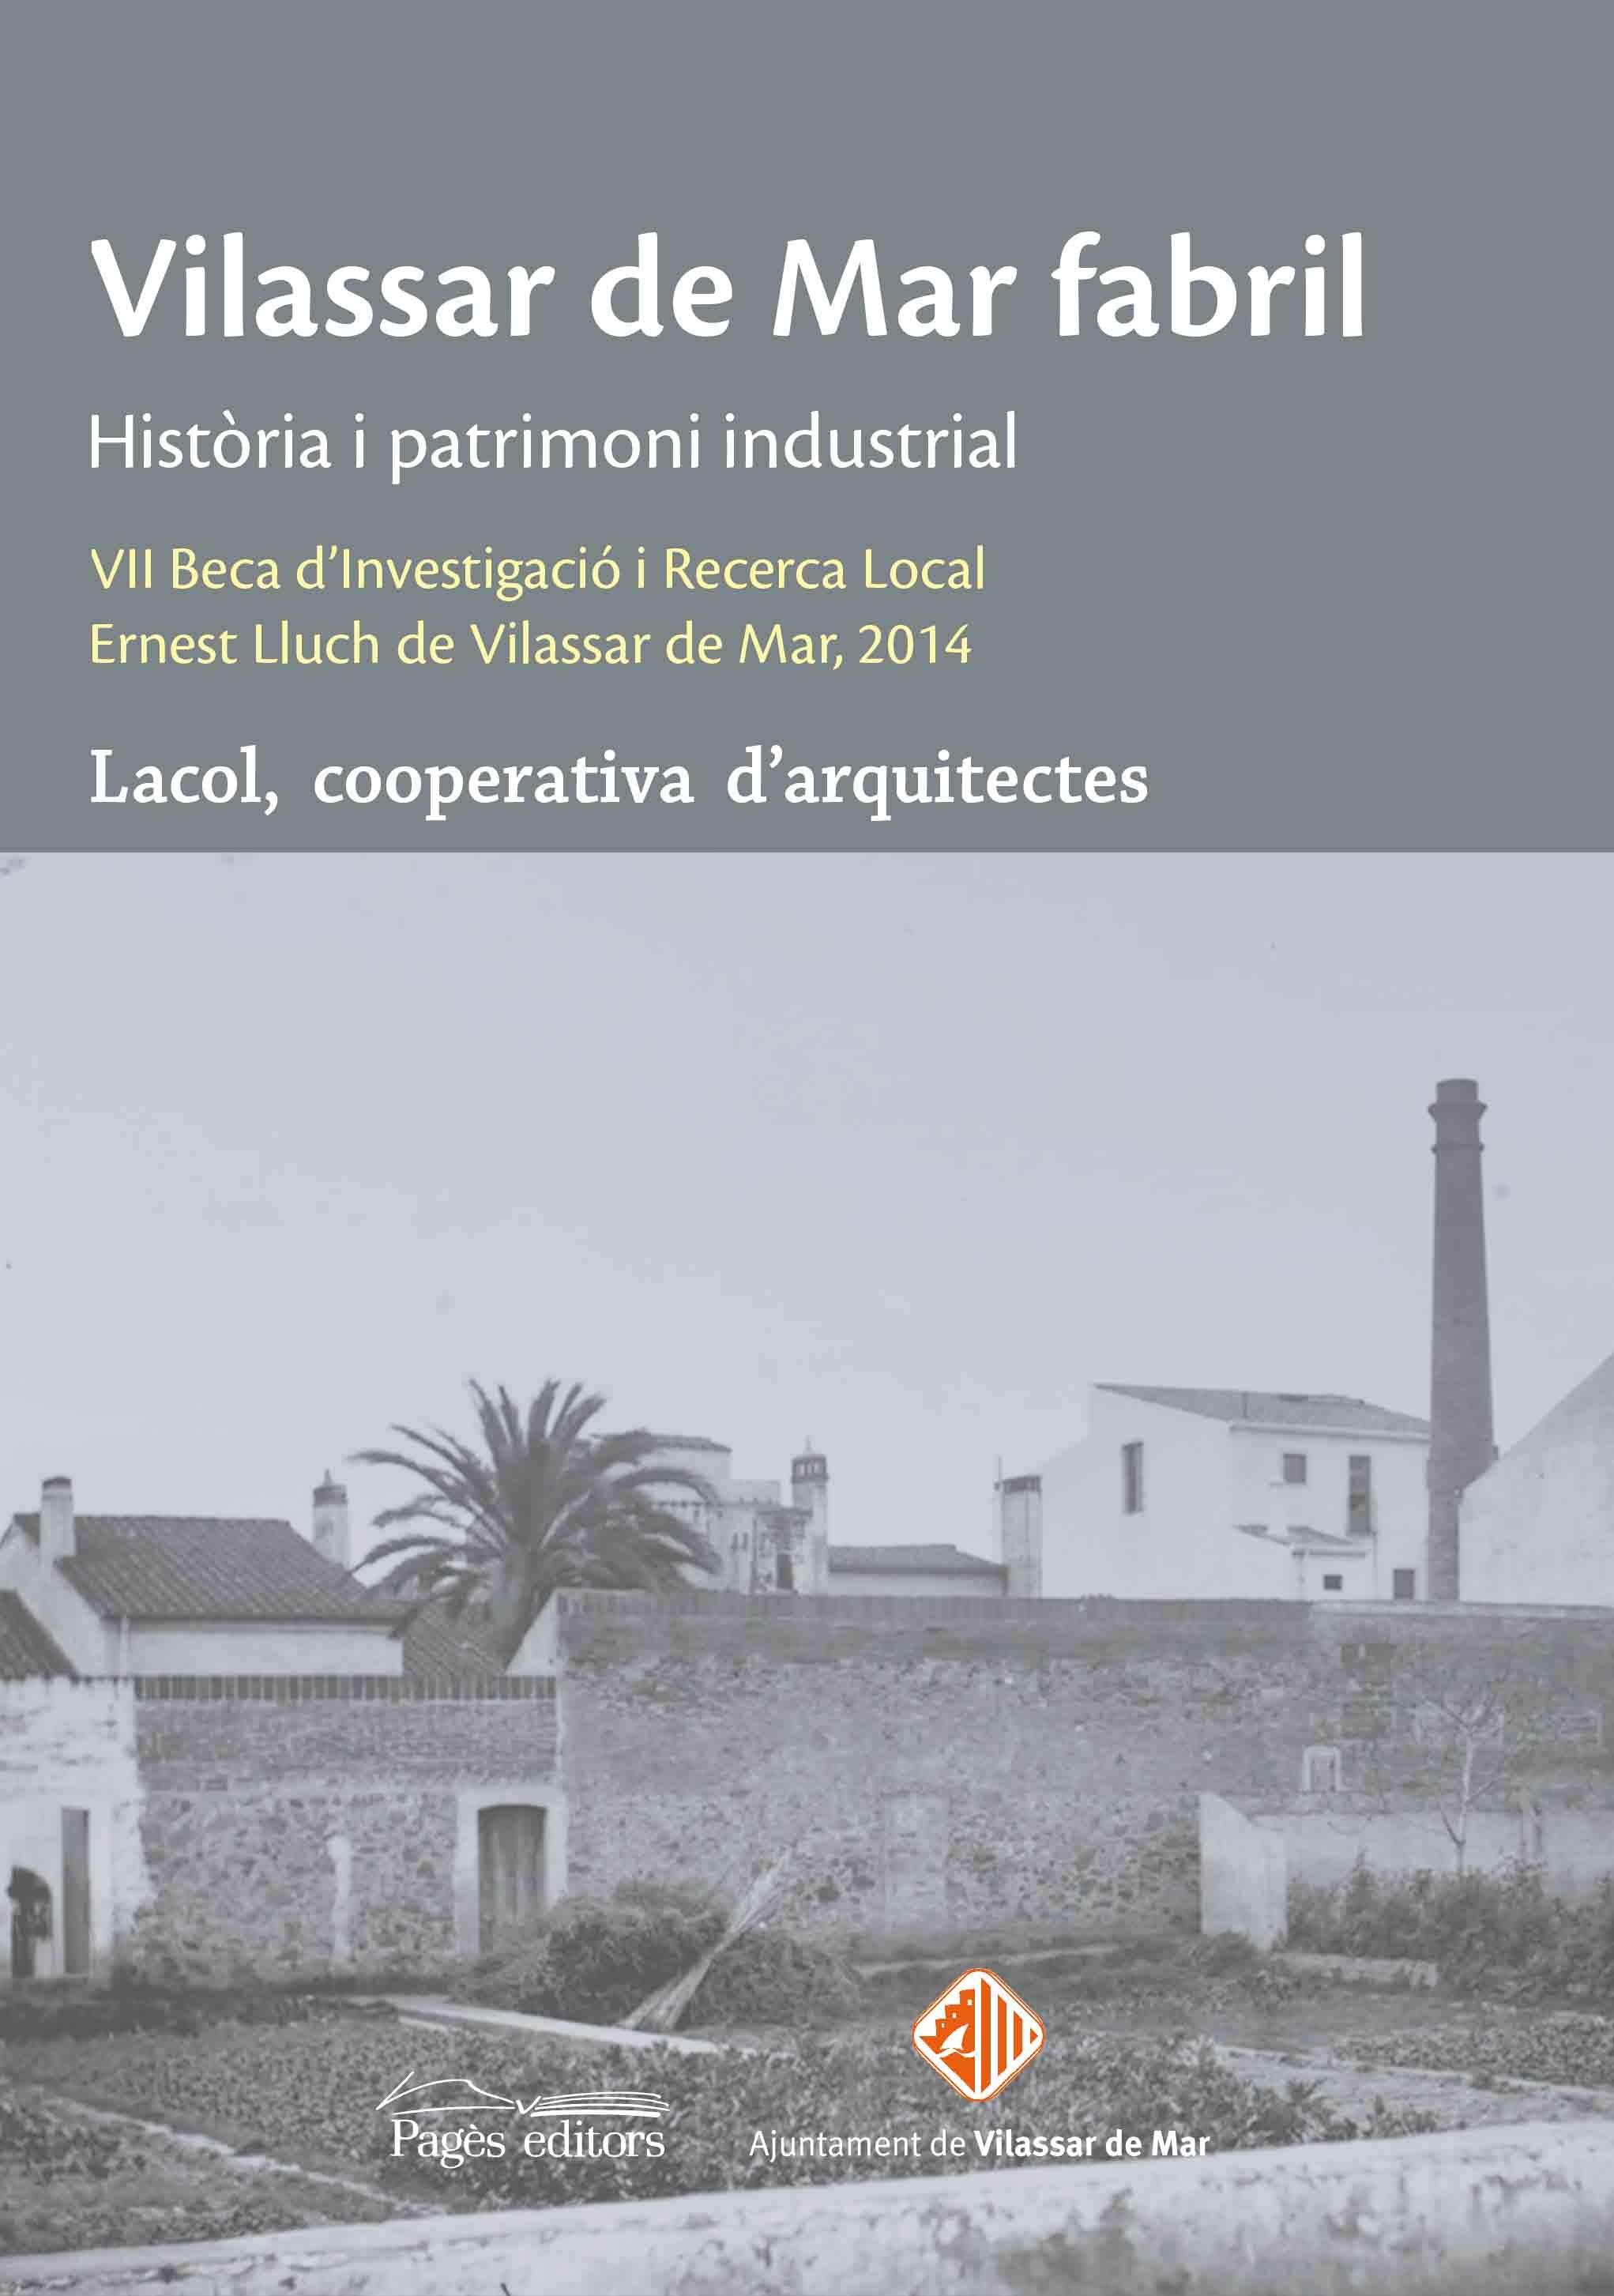 VILASSAR DE MAR FABRIL "Història i patrimoni industrial"